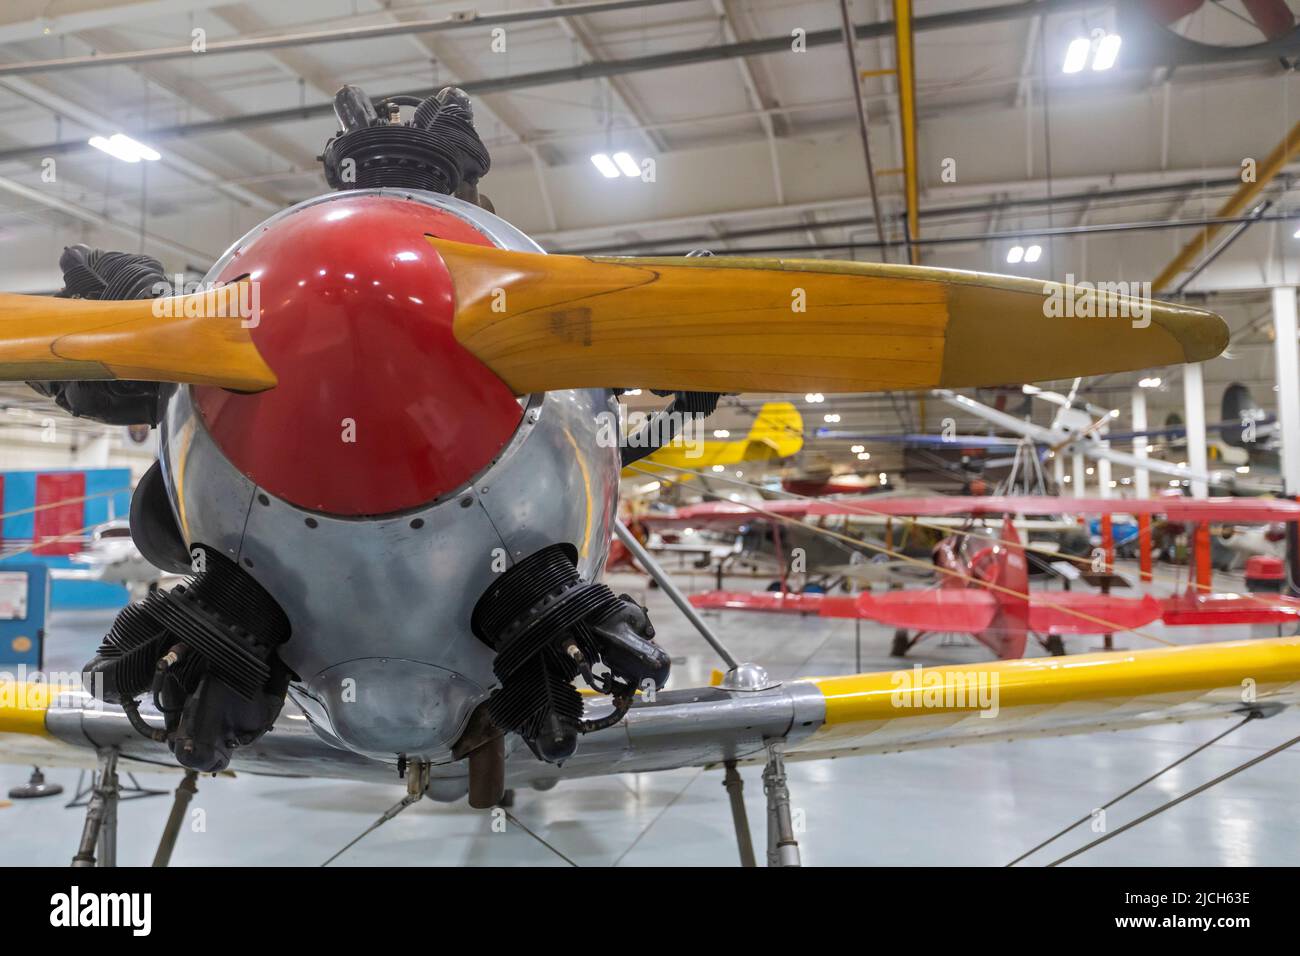 Liberal, Kansas - il Mid-America Air Museum. Il museo espone oltre 100 velivoli. Il Ryan PT-22 recruit era un velivolo durante la prima guerra mondiale Foto Stock